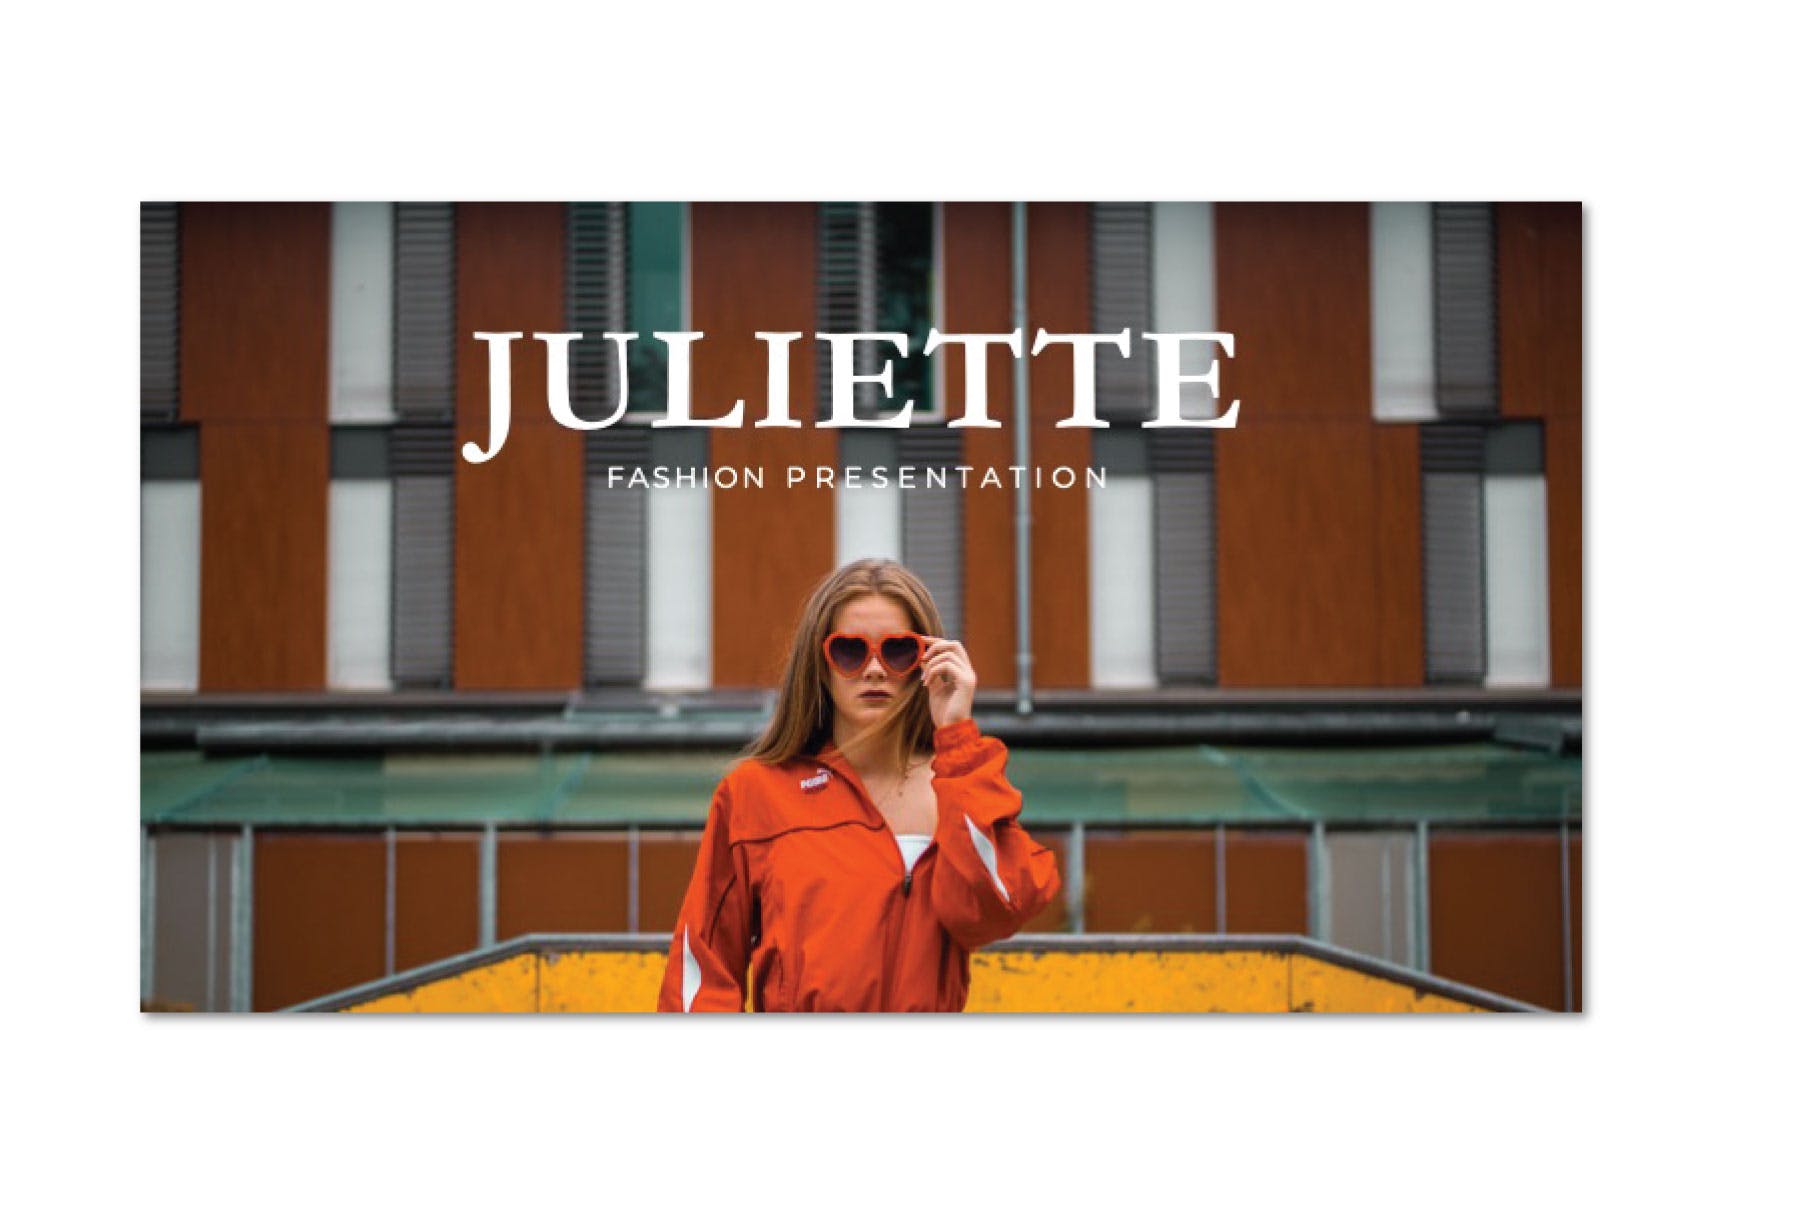 时尚服饰品牌介绍PPT幻灯片模板 JULIETTE – Powerpoint Template插图(1)